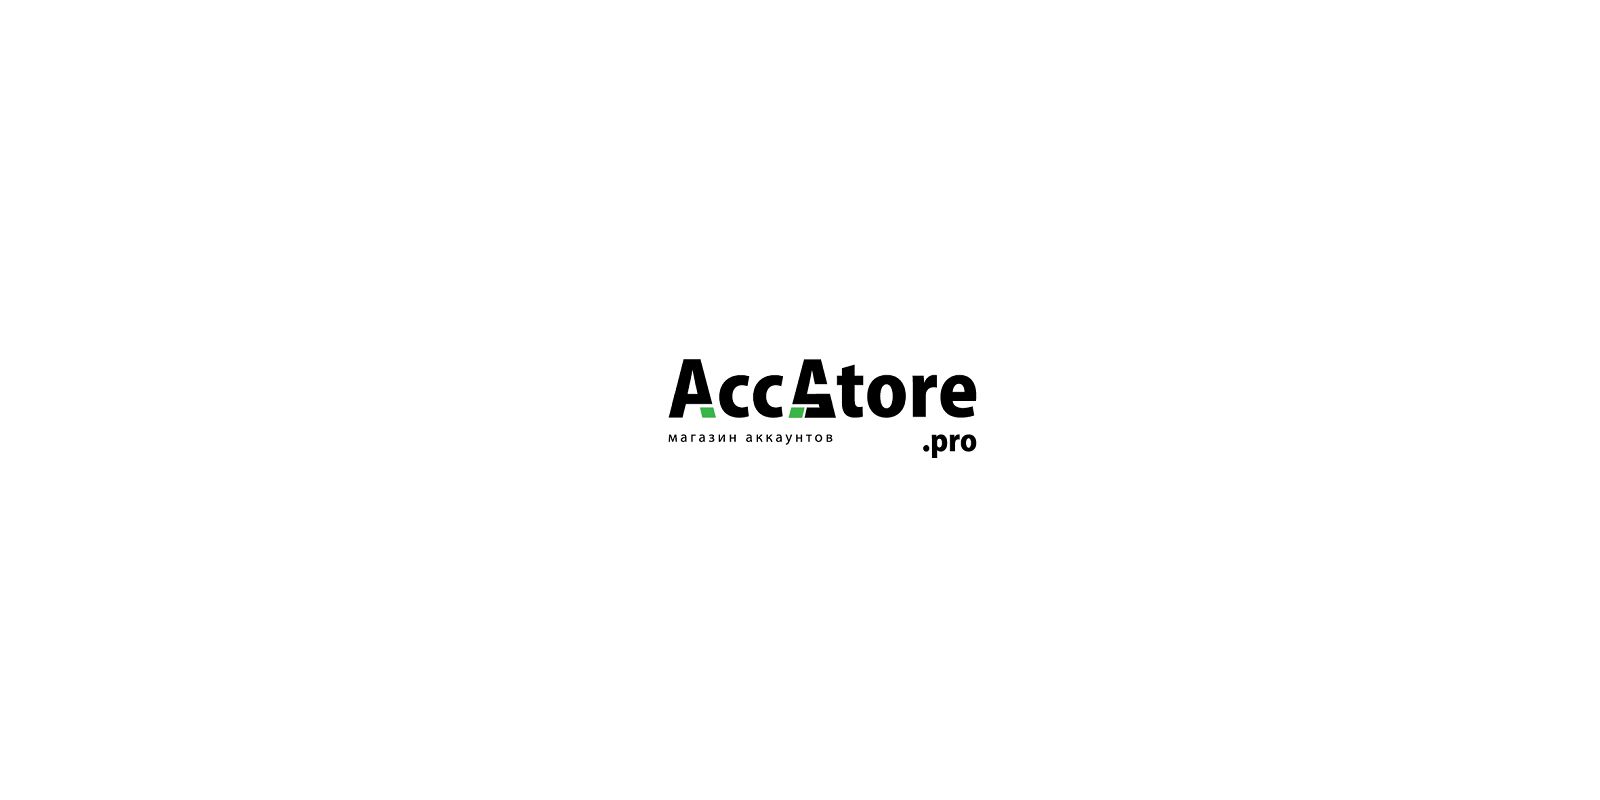 Логотип для магазина аккаунтов - дизайнер arturus